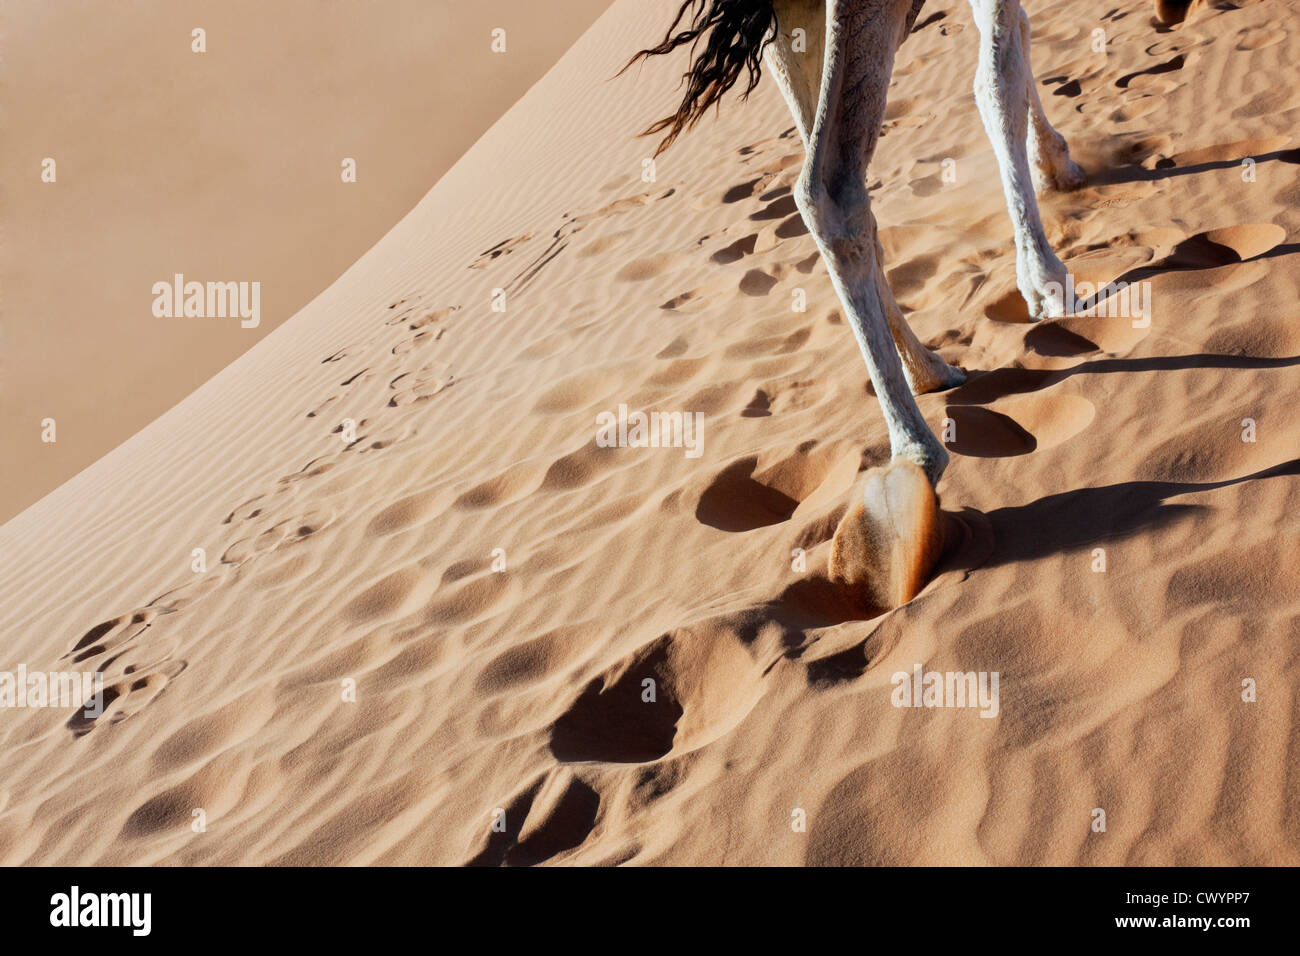 Camel legs walking in desert sand. Stock Photo